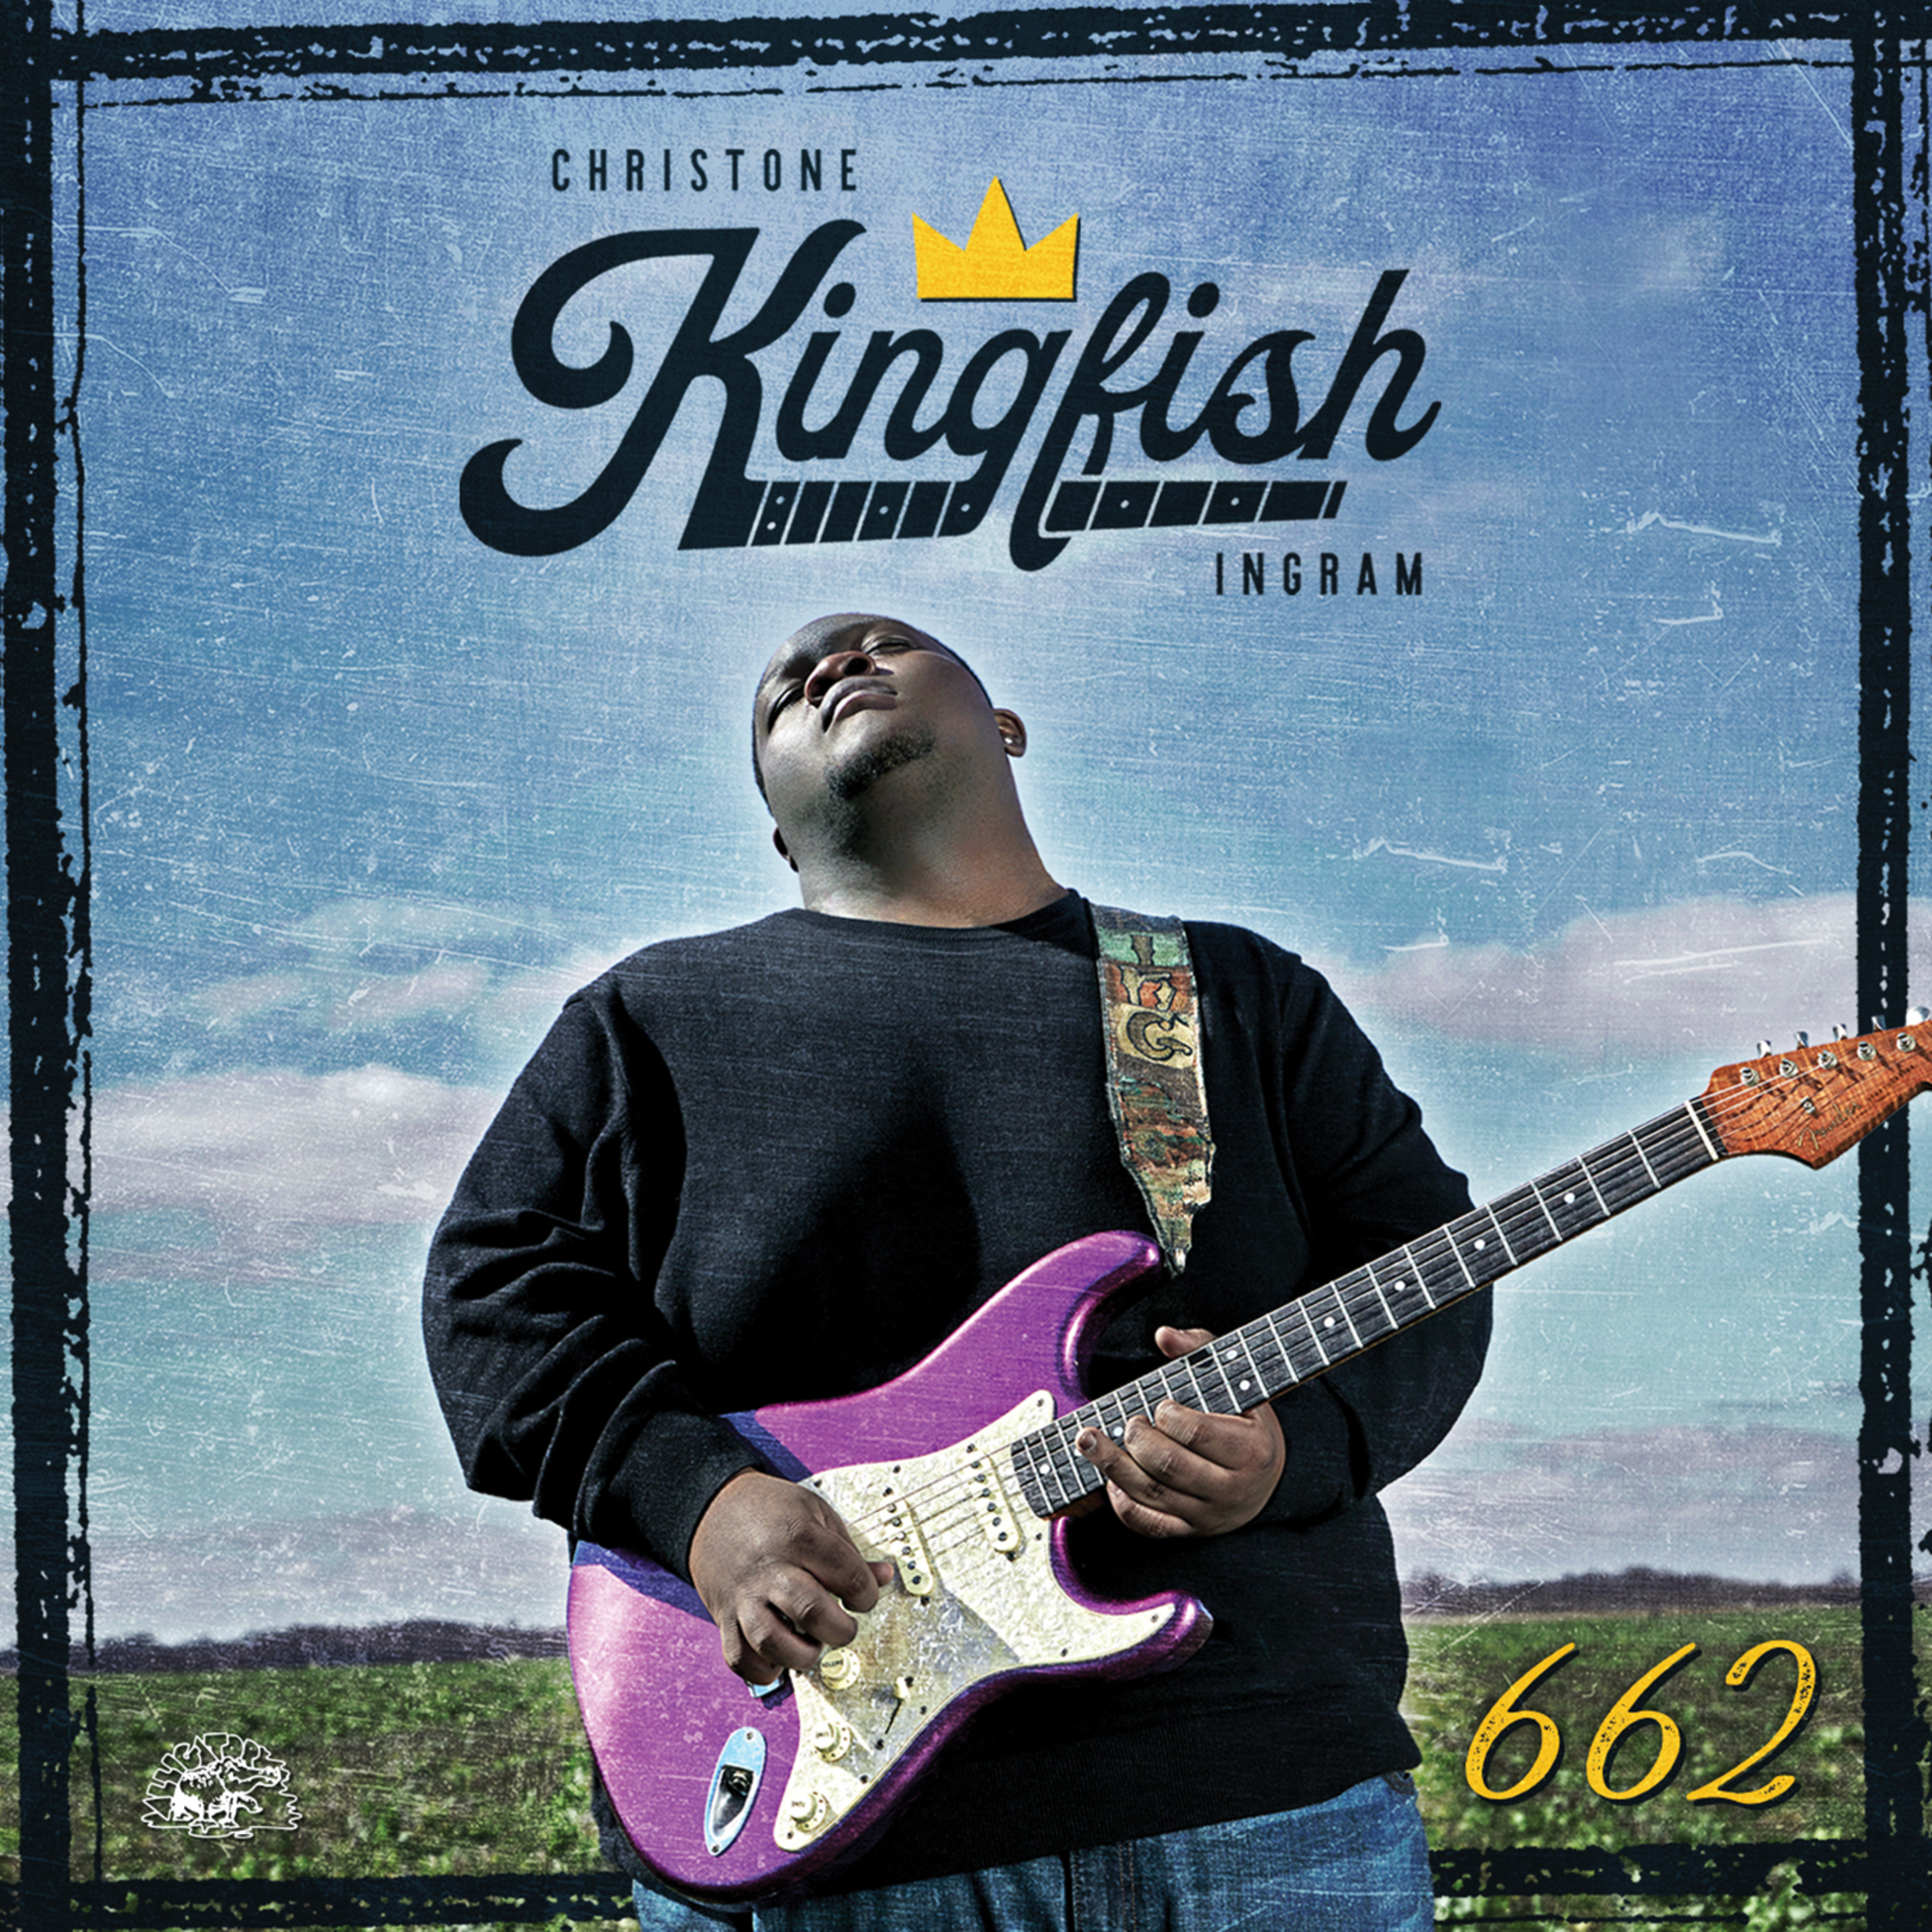 Christone “Kingfish” Ingram - 662